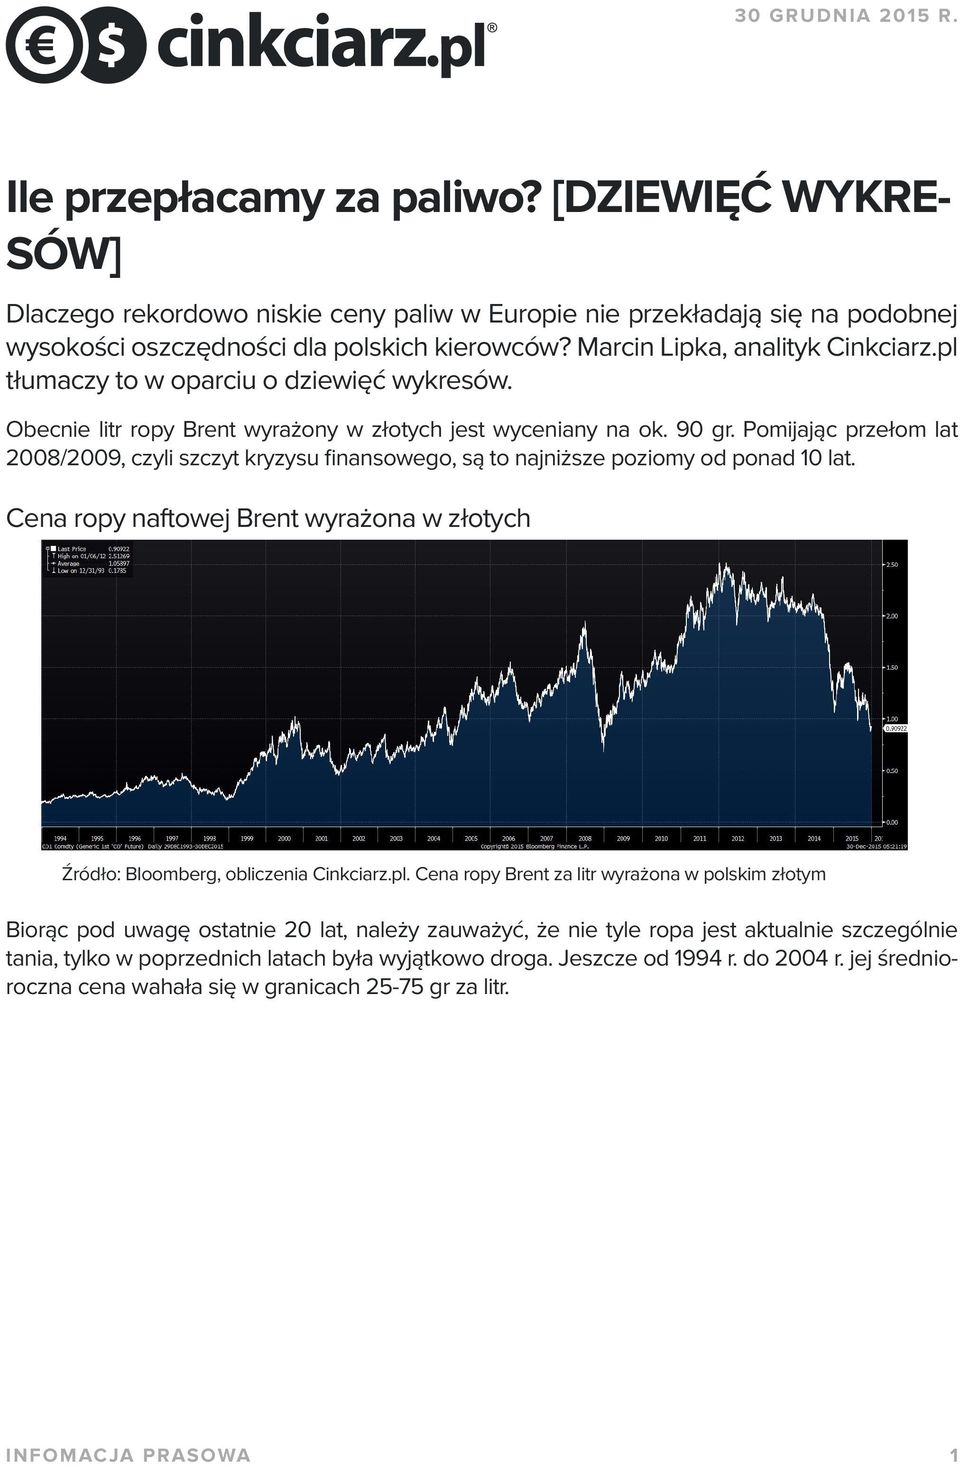 Pomijając przełom lat 2008/2009, czyli szczyt kryzysu finansowego, są to najniższe poziomy od ponad 10 lat. Cena ropy naftowej Brent wyrażona w złotych Źródło: Bloomberg, obliczenia Cinkciarz.pl.